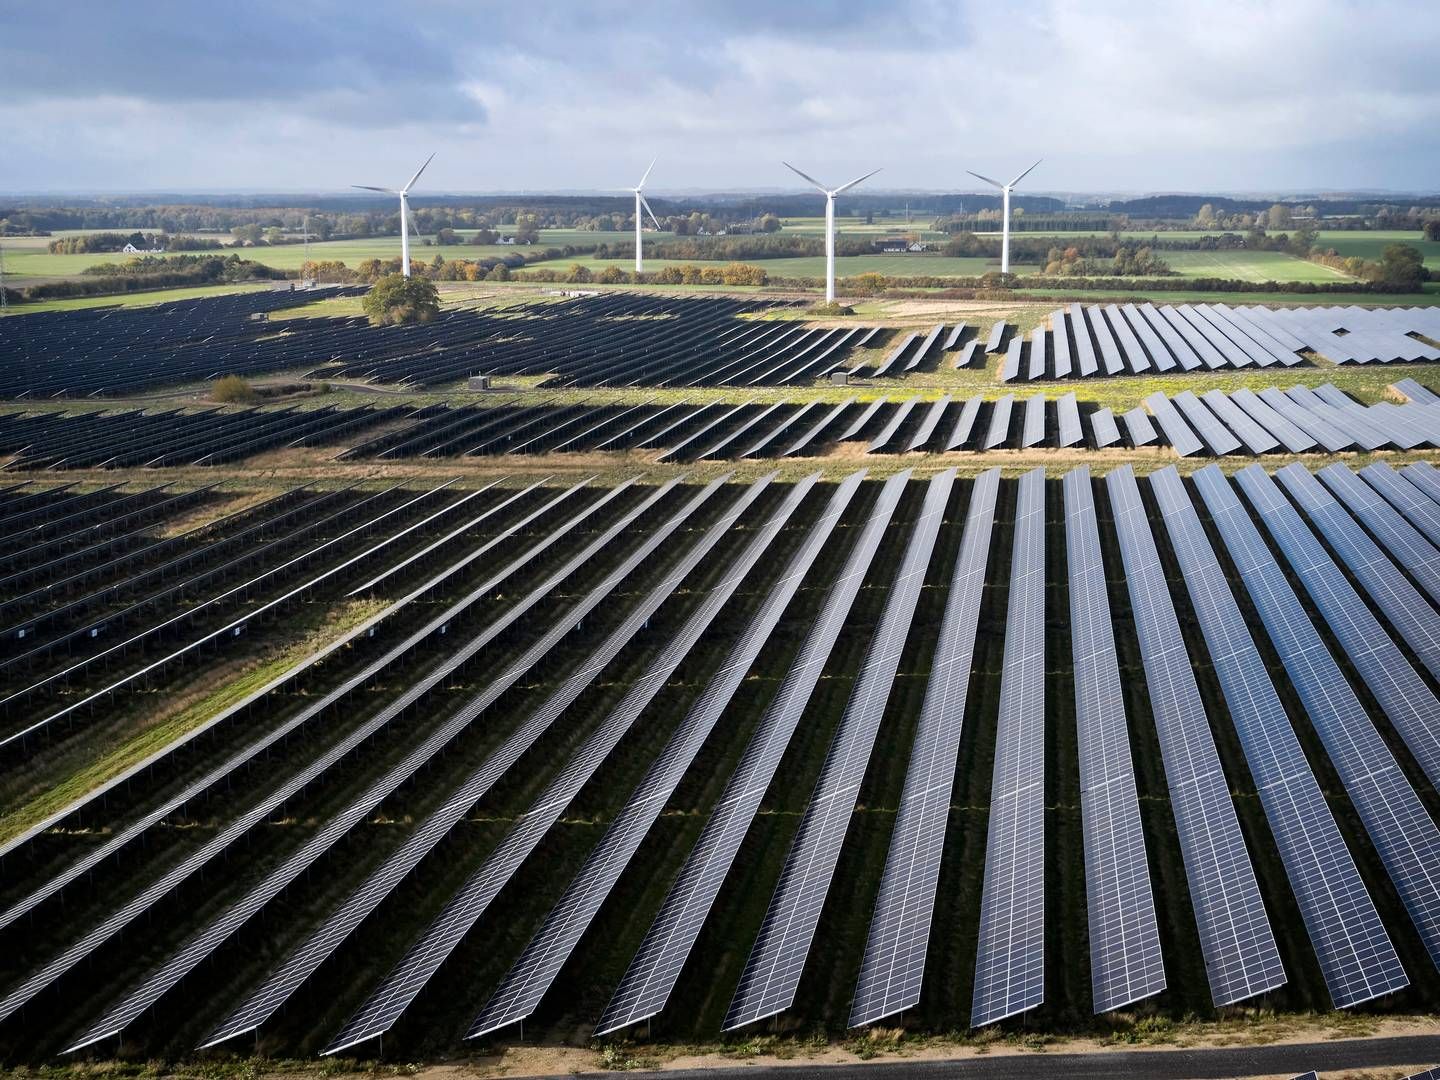 Vedvarende energi, som f.eks. solenergi, stod for syv pct. af verdens 60 største bankers lån til energisektoren i 2021. | Foto: Jens Dresling